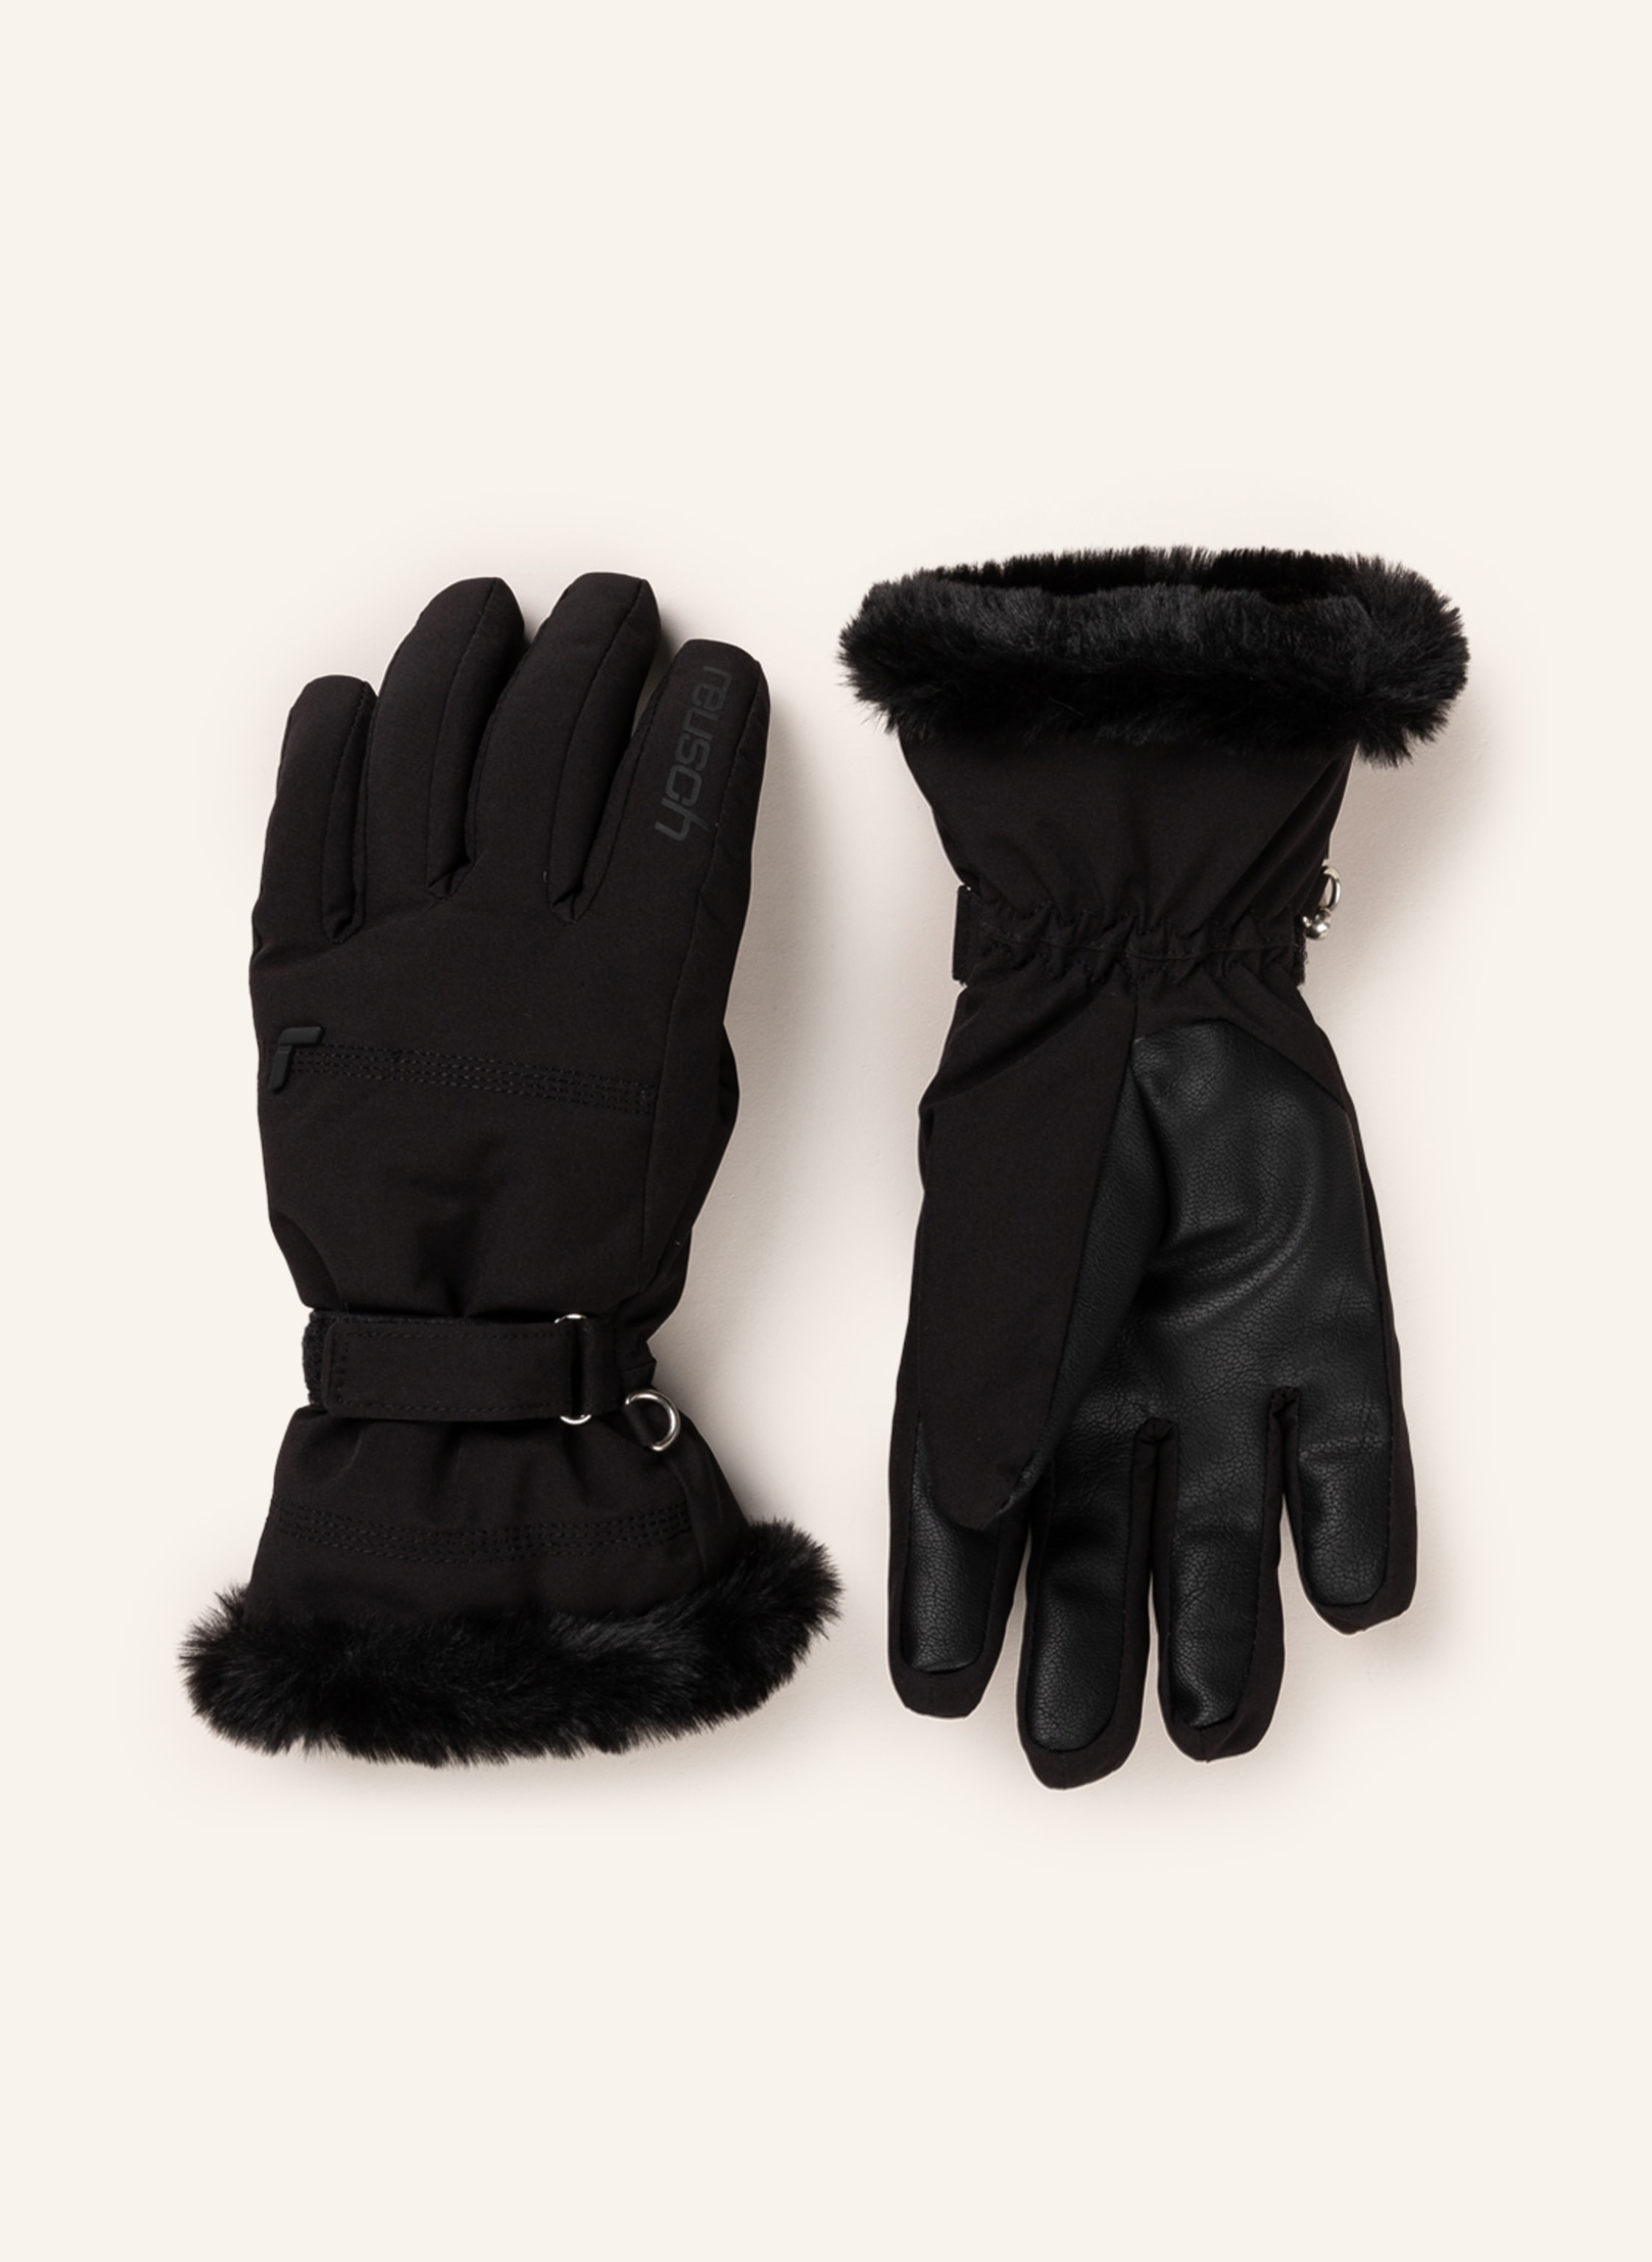 XT gloves reusch R-TEX black Ski in LUNA